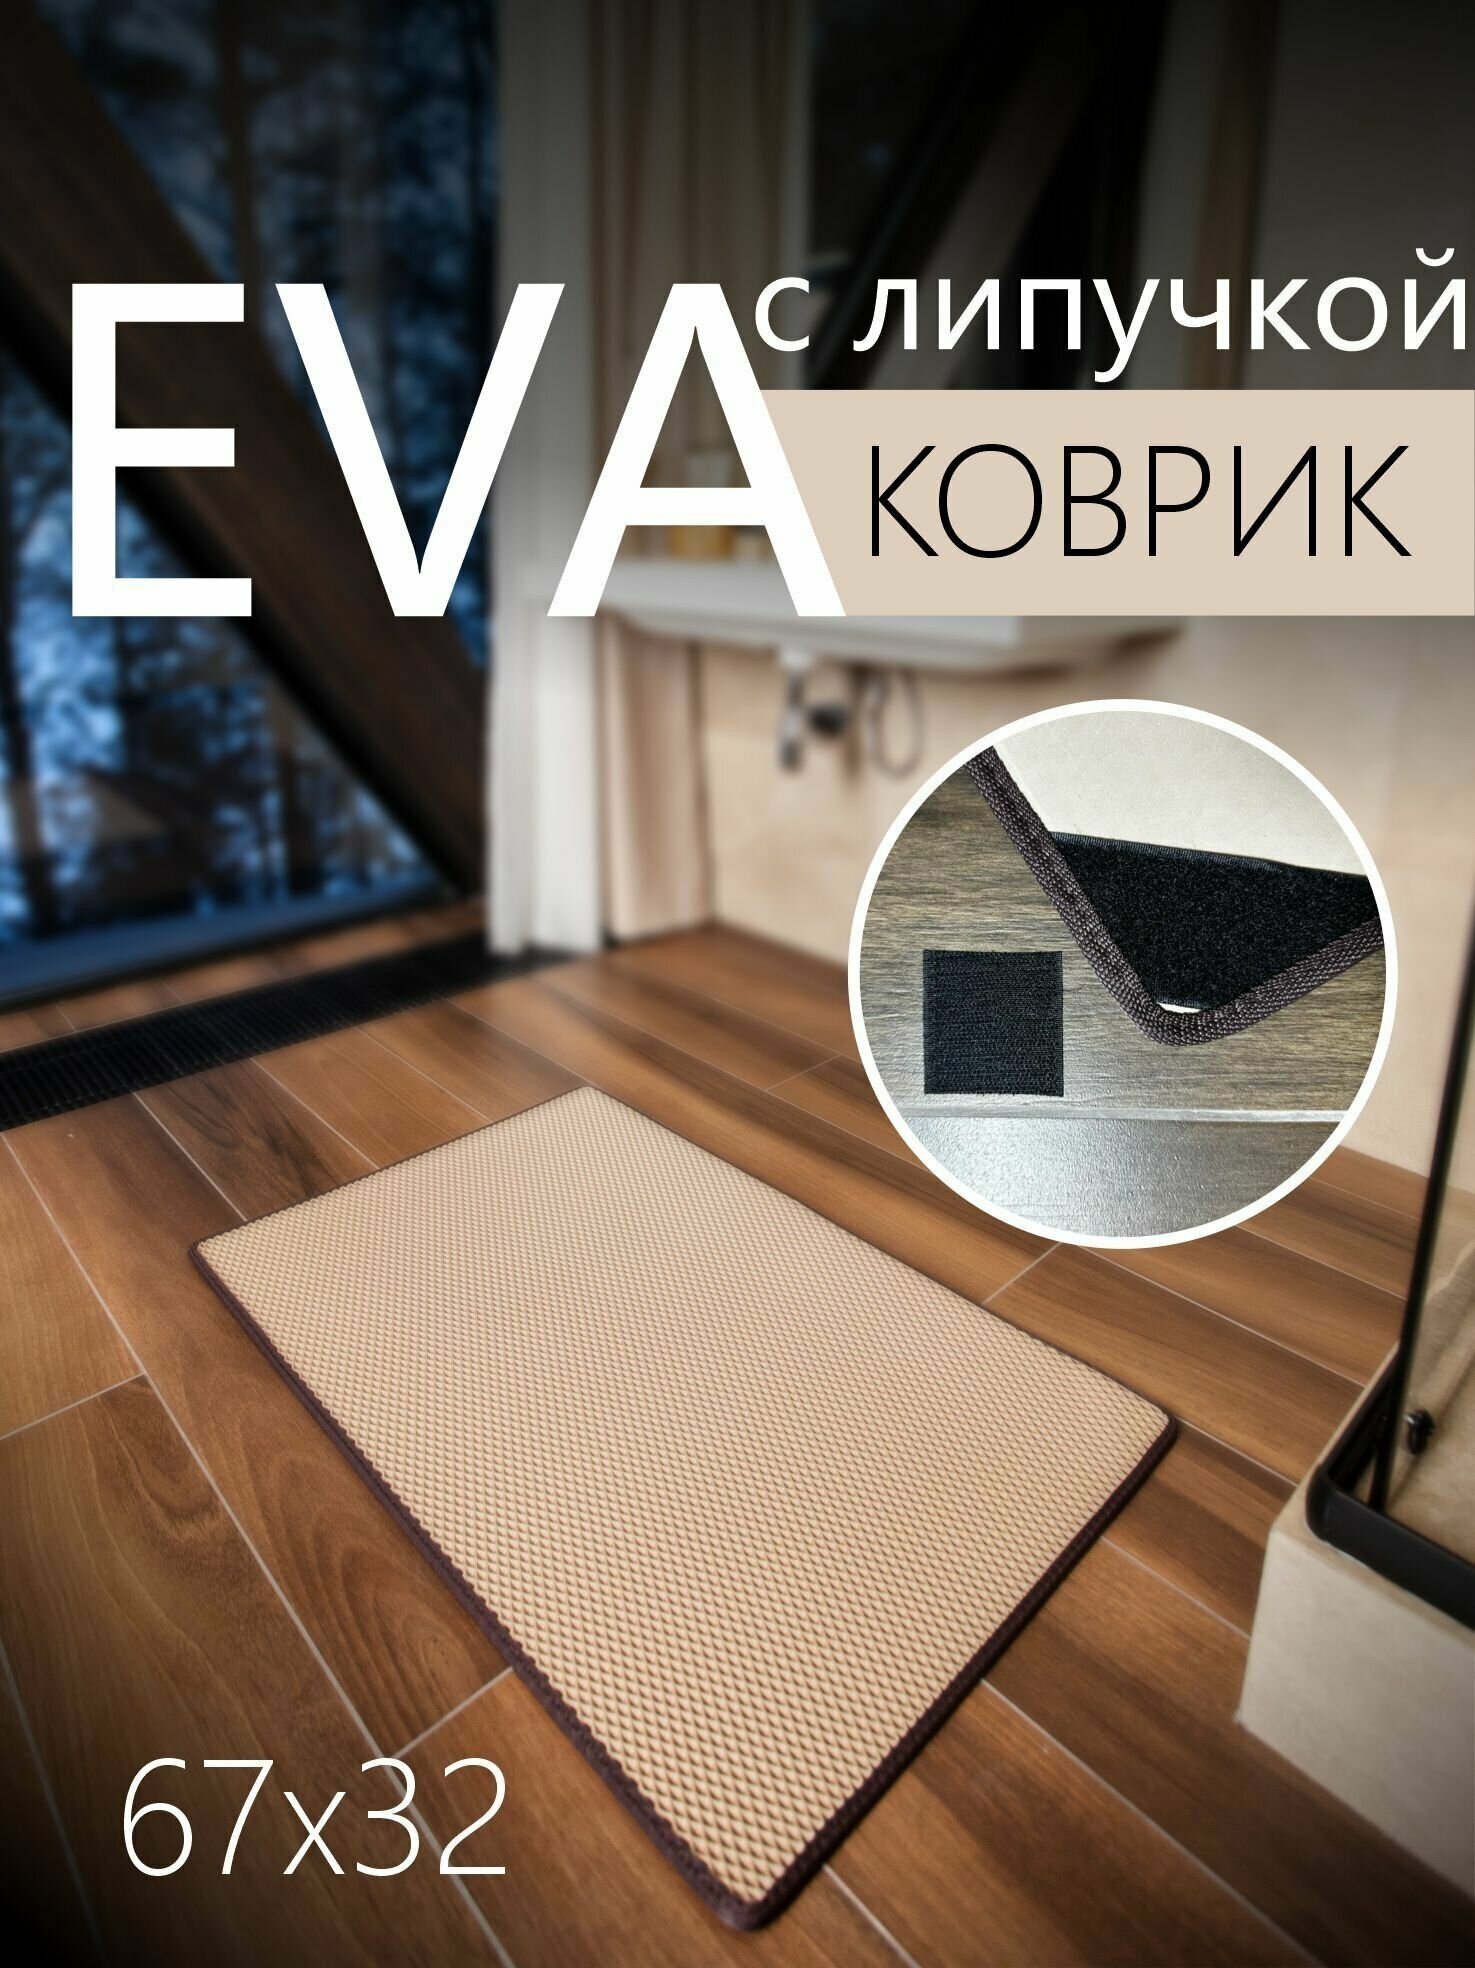 Коврик придверный противоскользящий EVA ЭВА универсальный 67х32 сантиметра. Липучки для фиксации. Ромб Бежевый с коричневой окантовкой